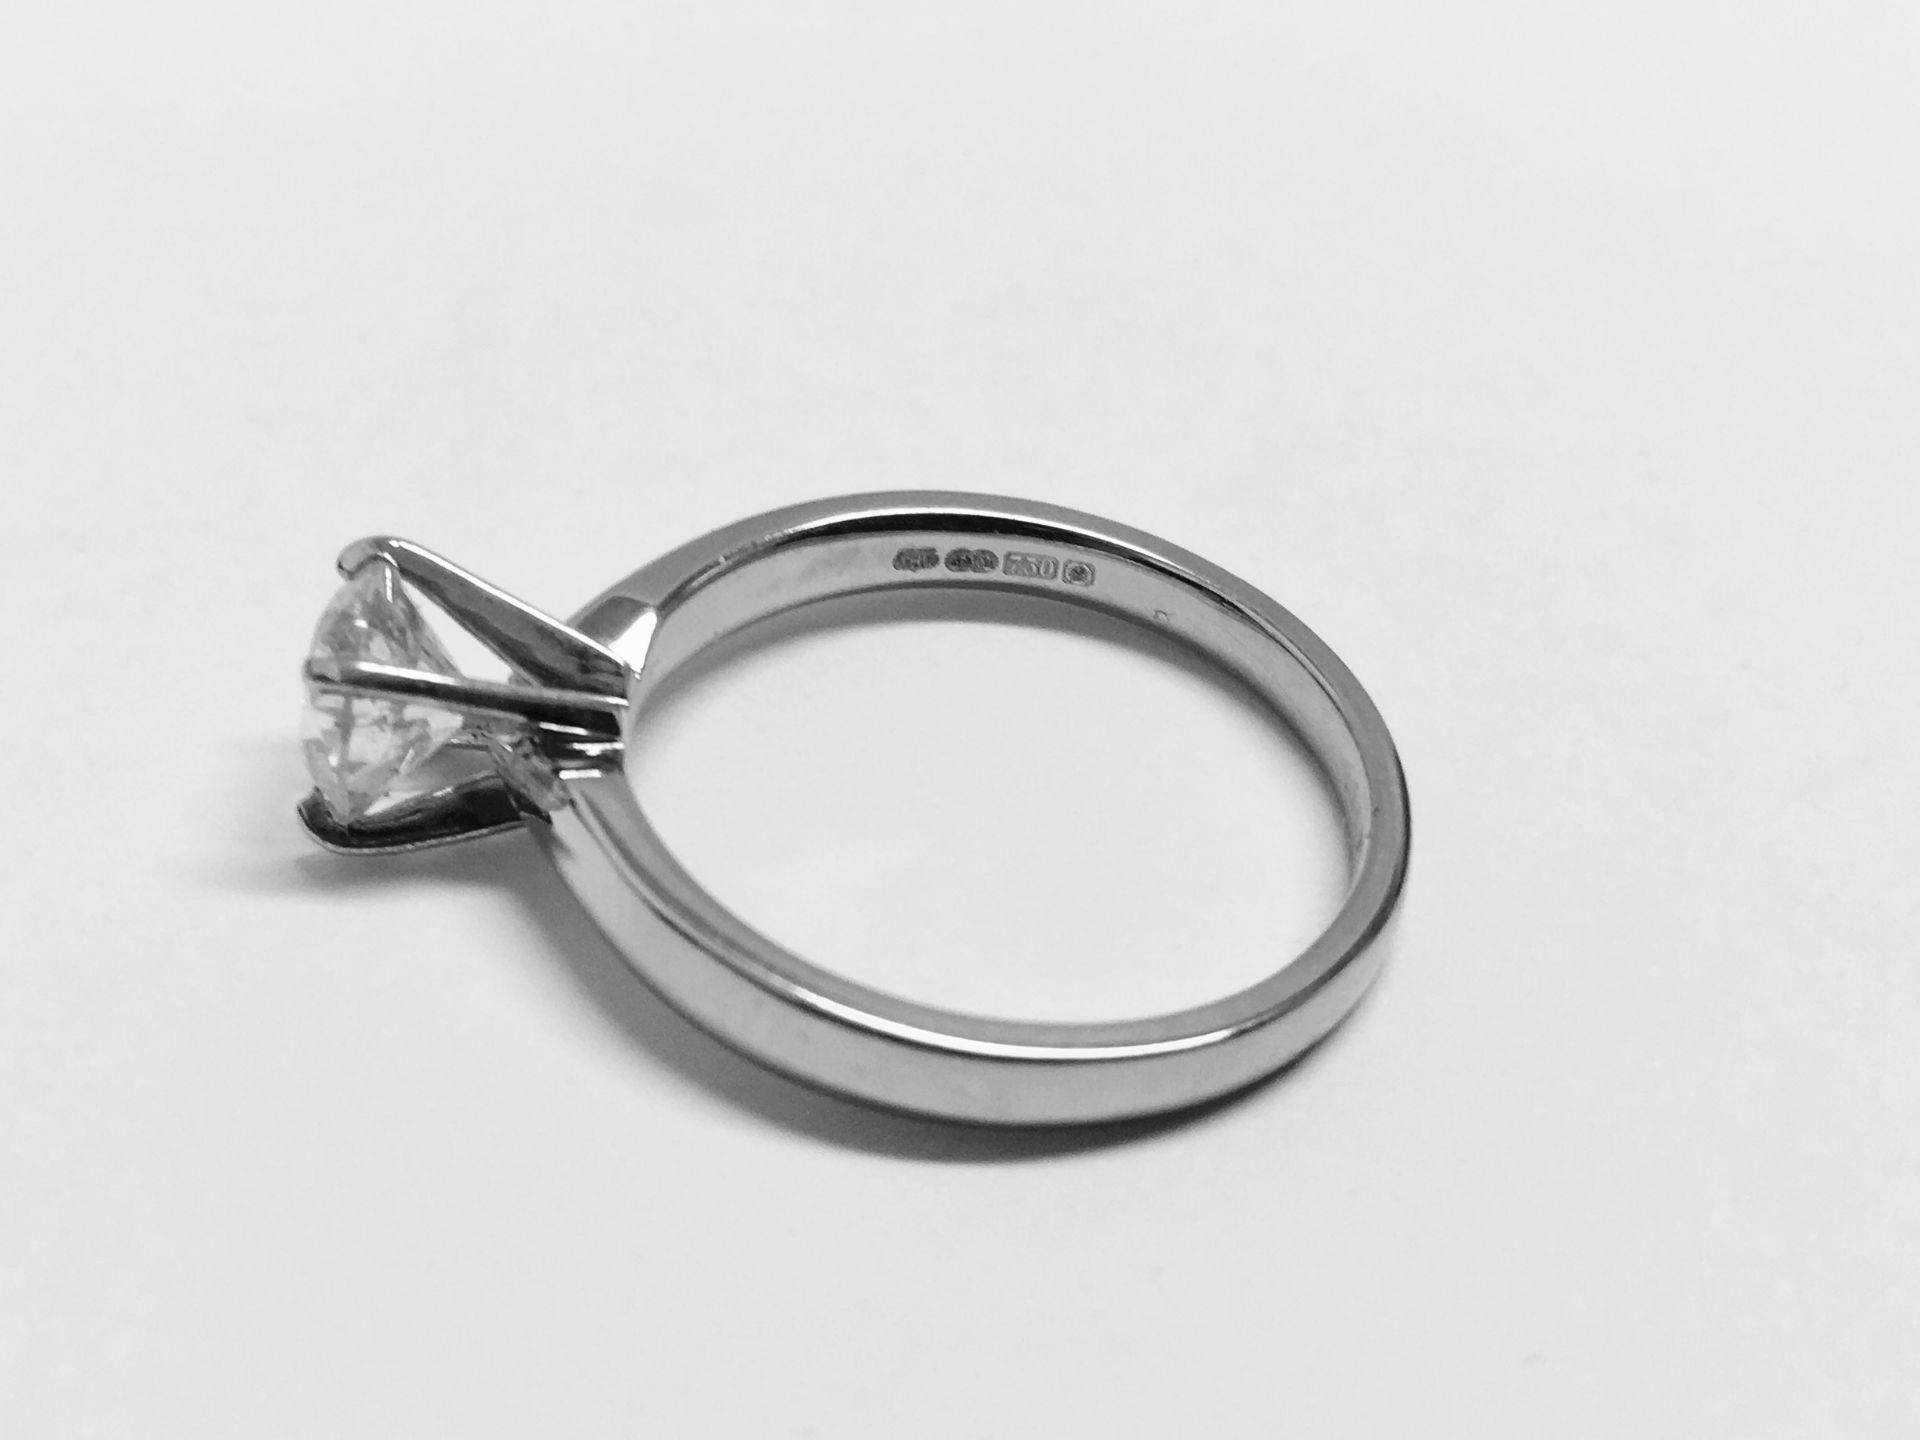 Platinum 1ct Brilliant Cut Diamond Solitaire Ring - Image 3 of 4